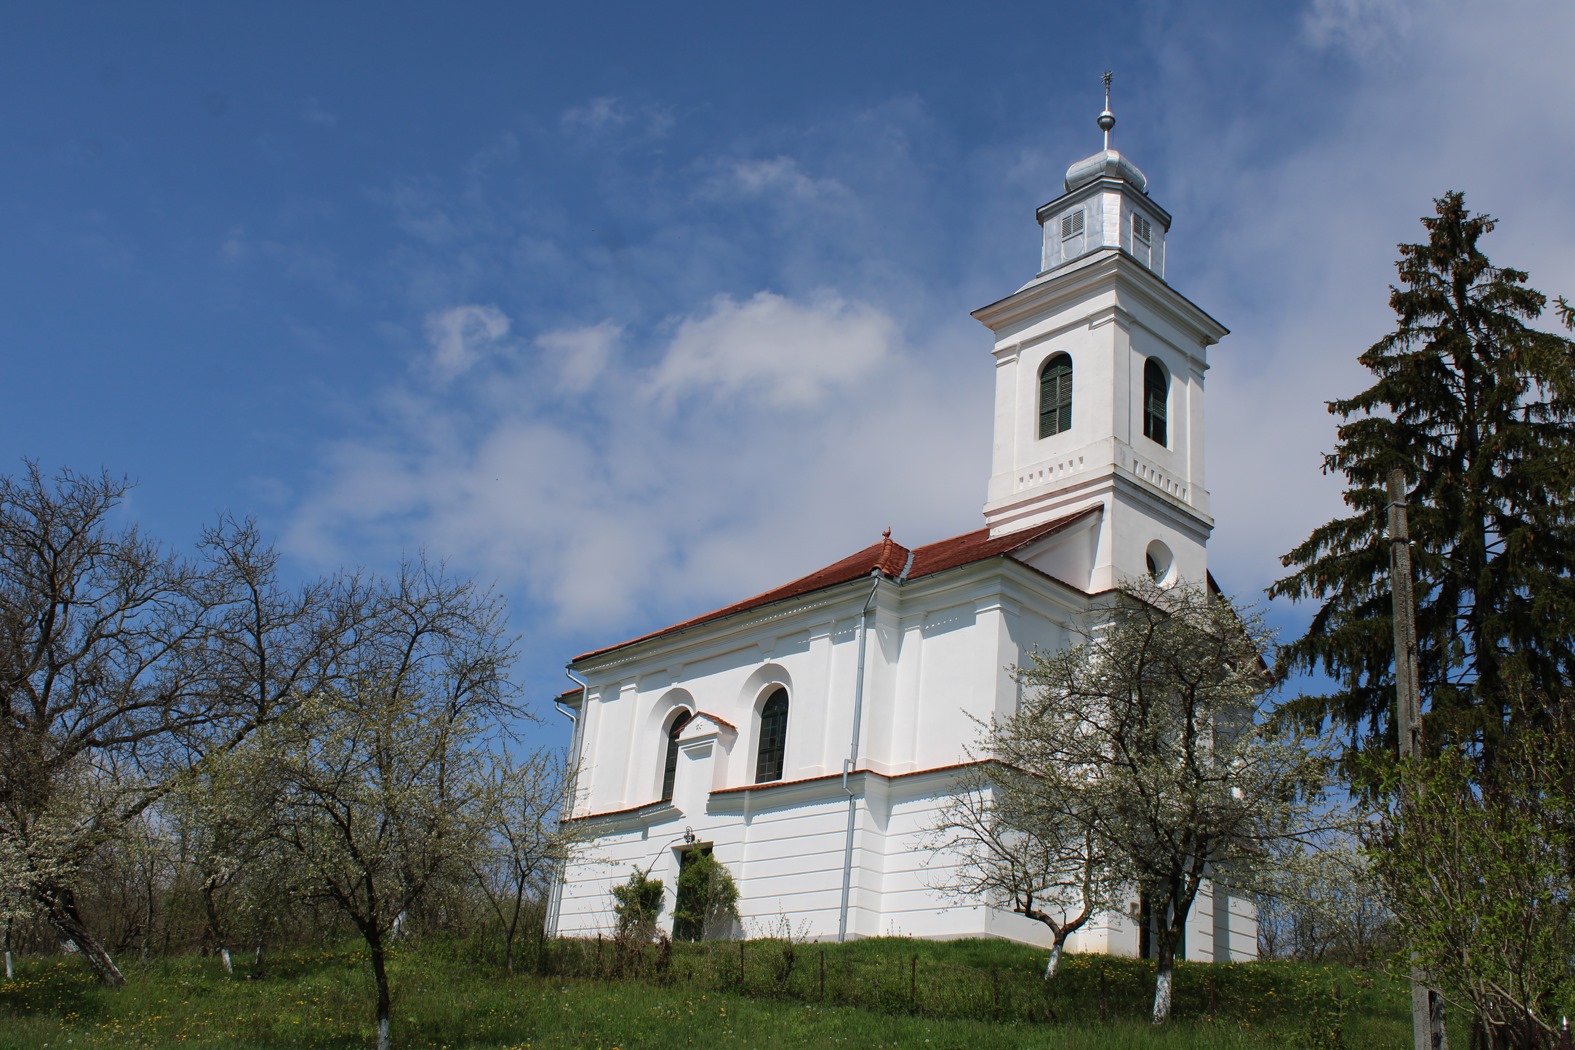 A dobai református templom, ahová két falu közössége jár 